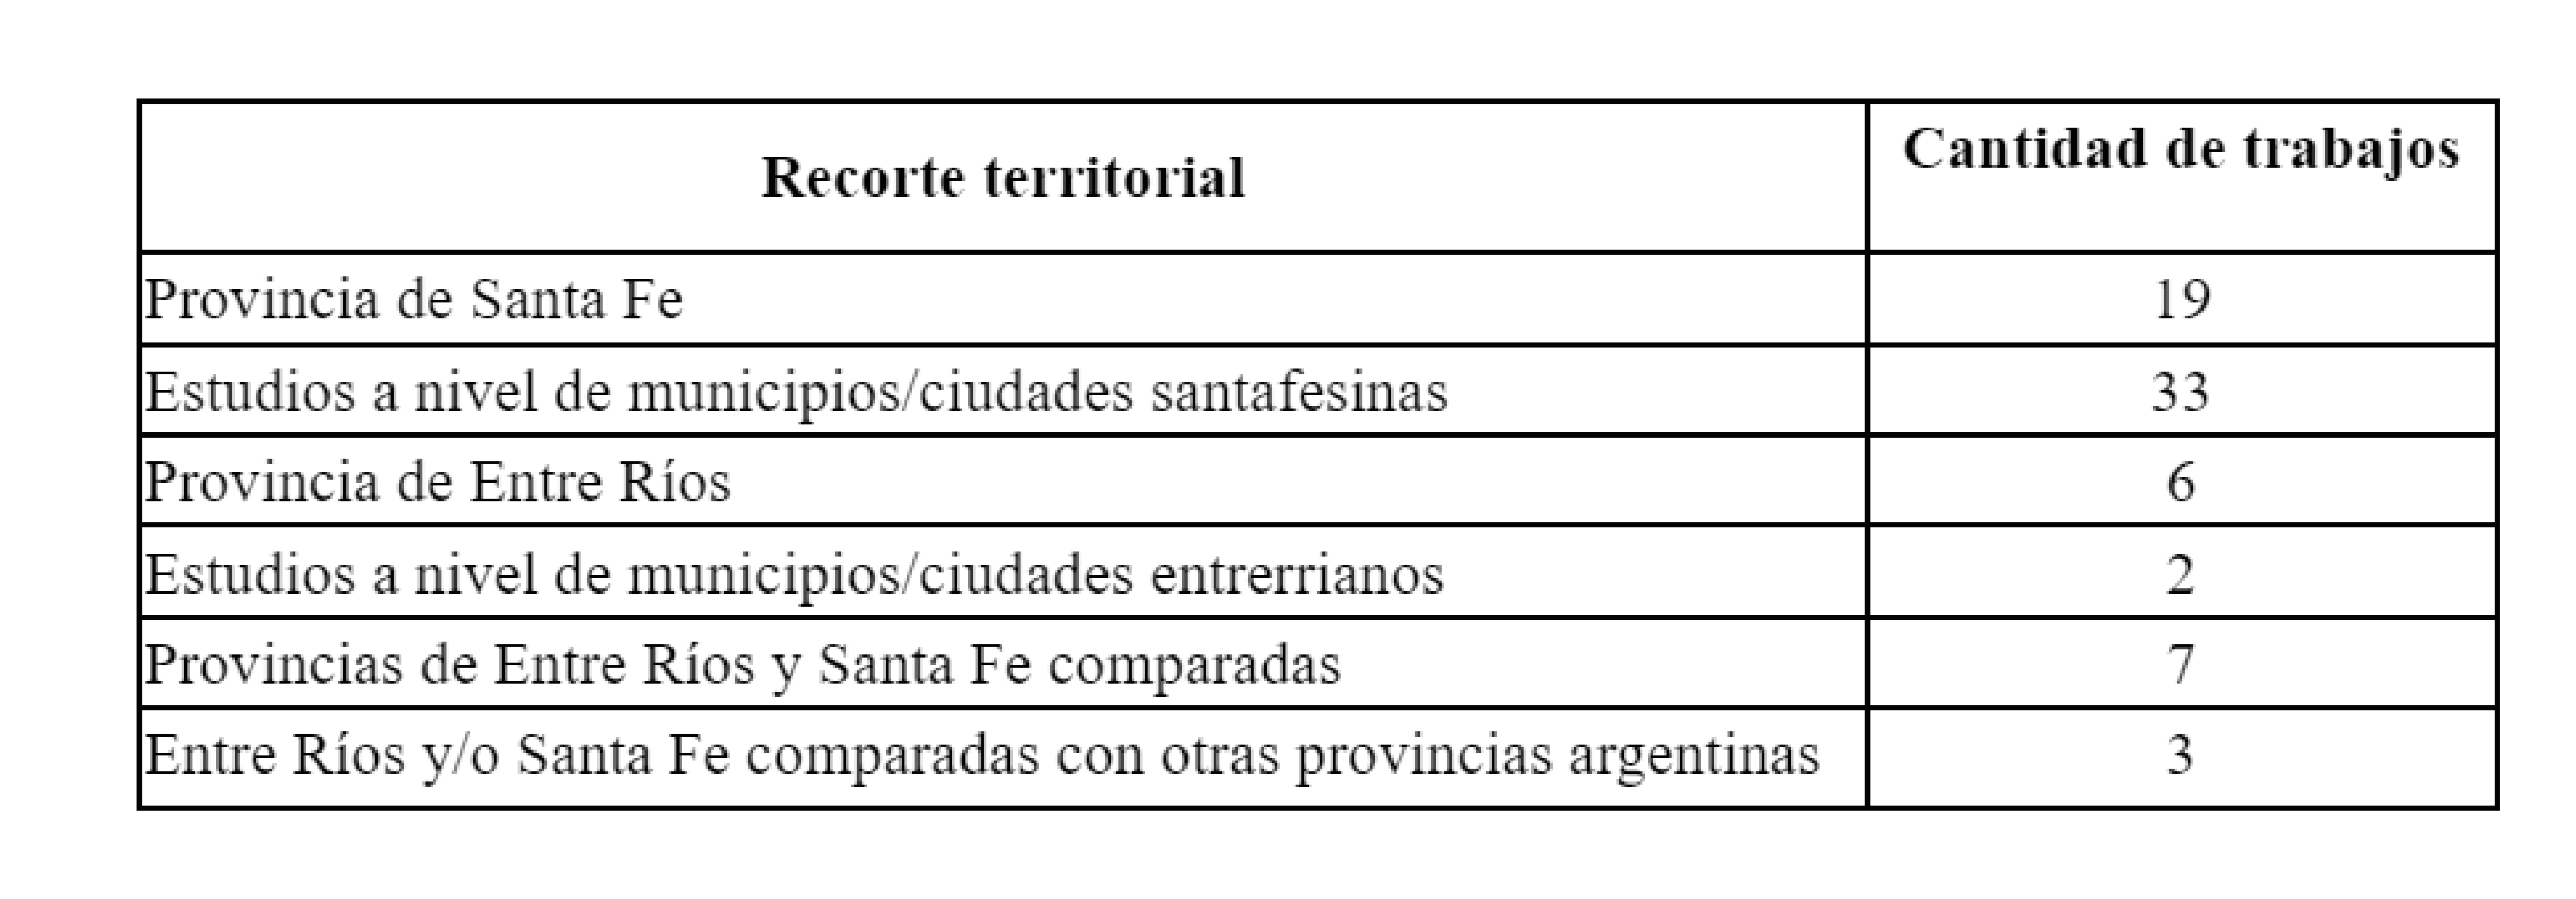 Recorte territorial de los trabajos
identificados, 2000-2022.